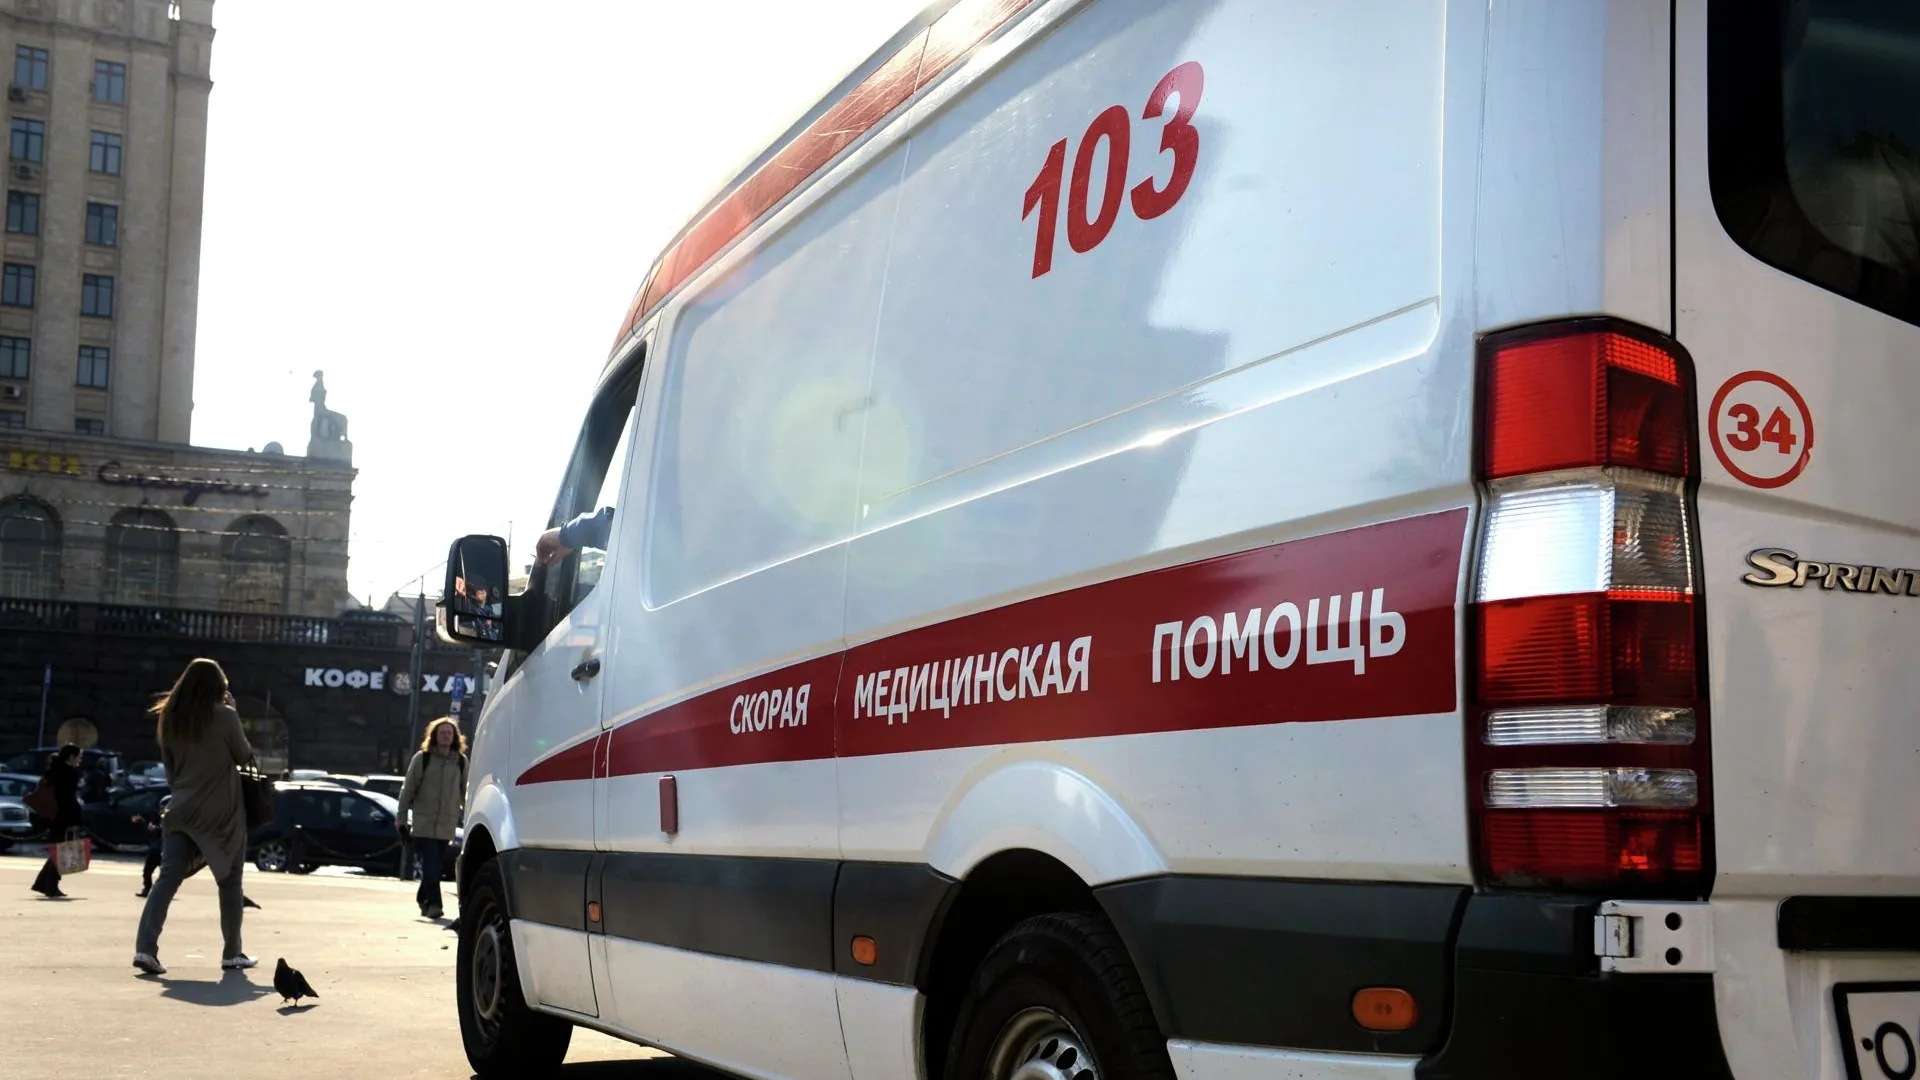 Двухлетний ребенок в Москве получил ожог лица от импортного чистящего средства